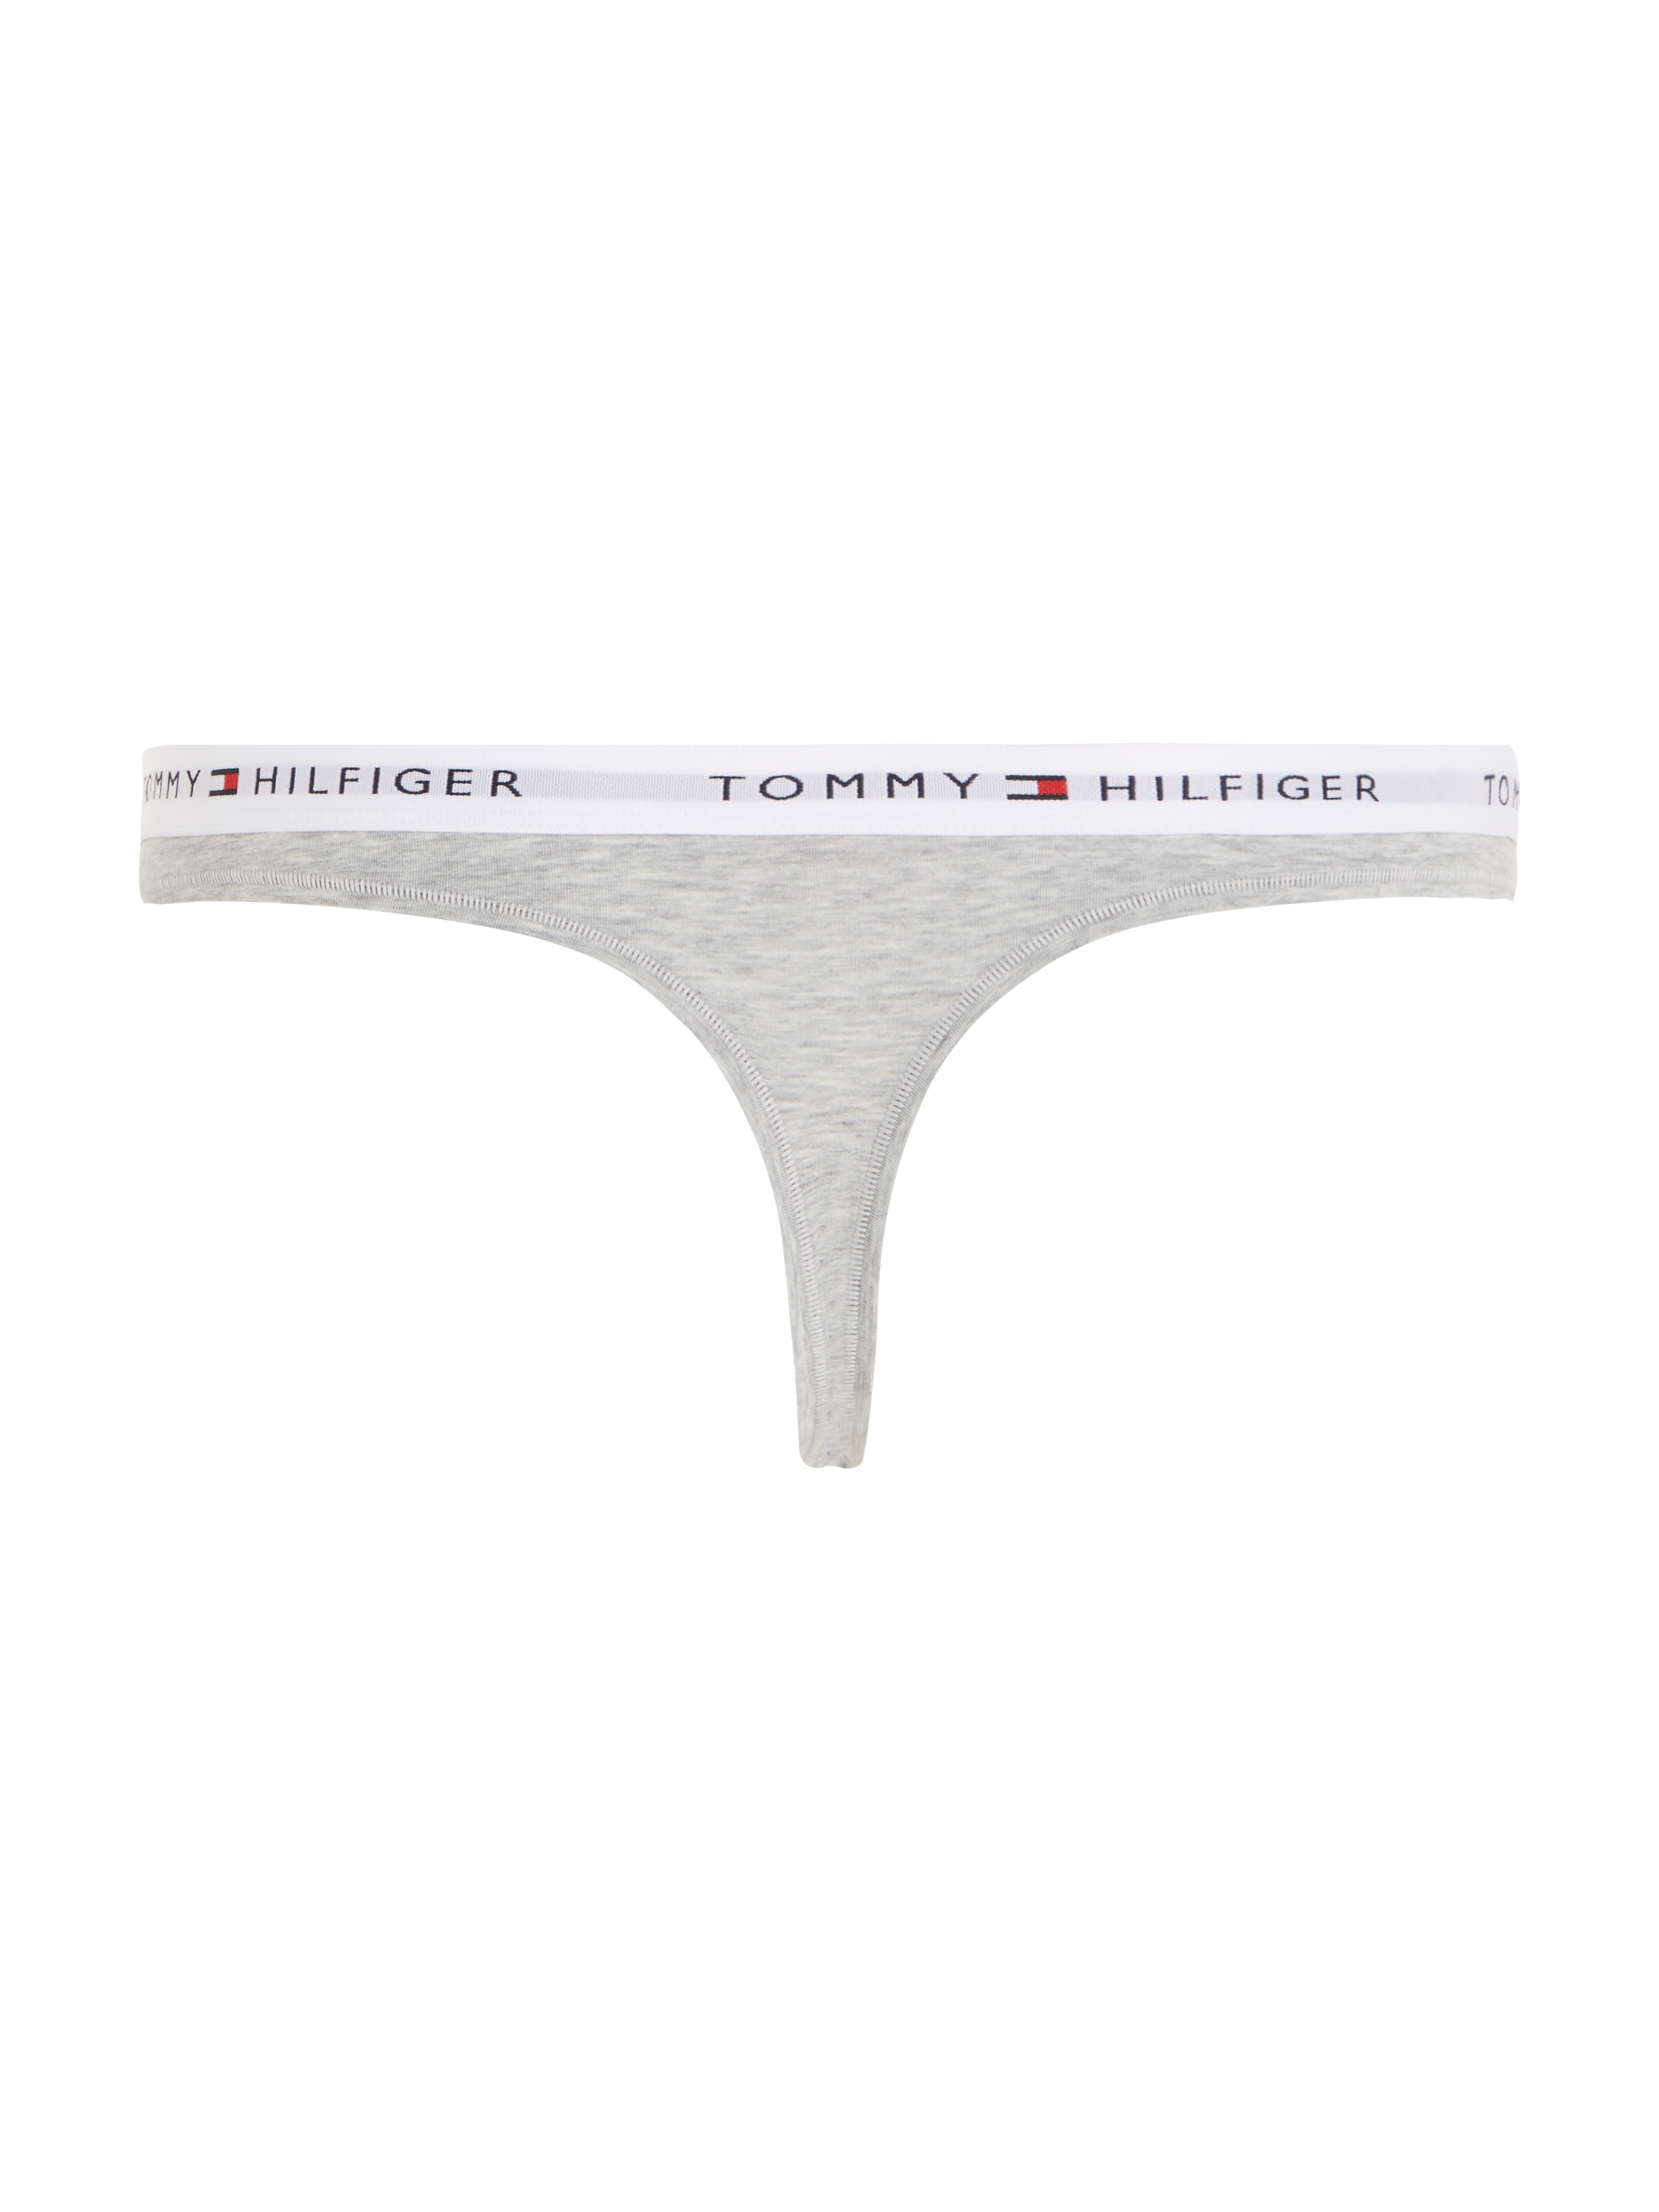 OTTO bei Underwear Logo T-String, Hilfiger kaufen auf dem Taillenbund Tommy mit